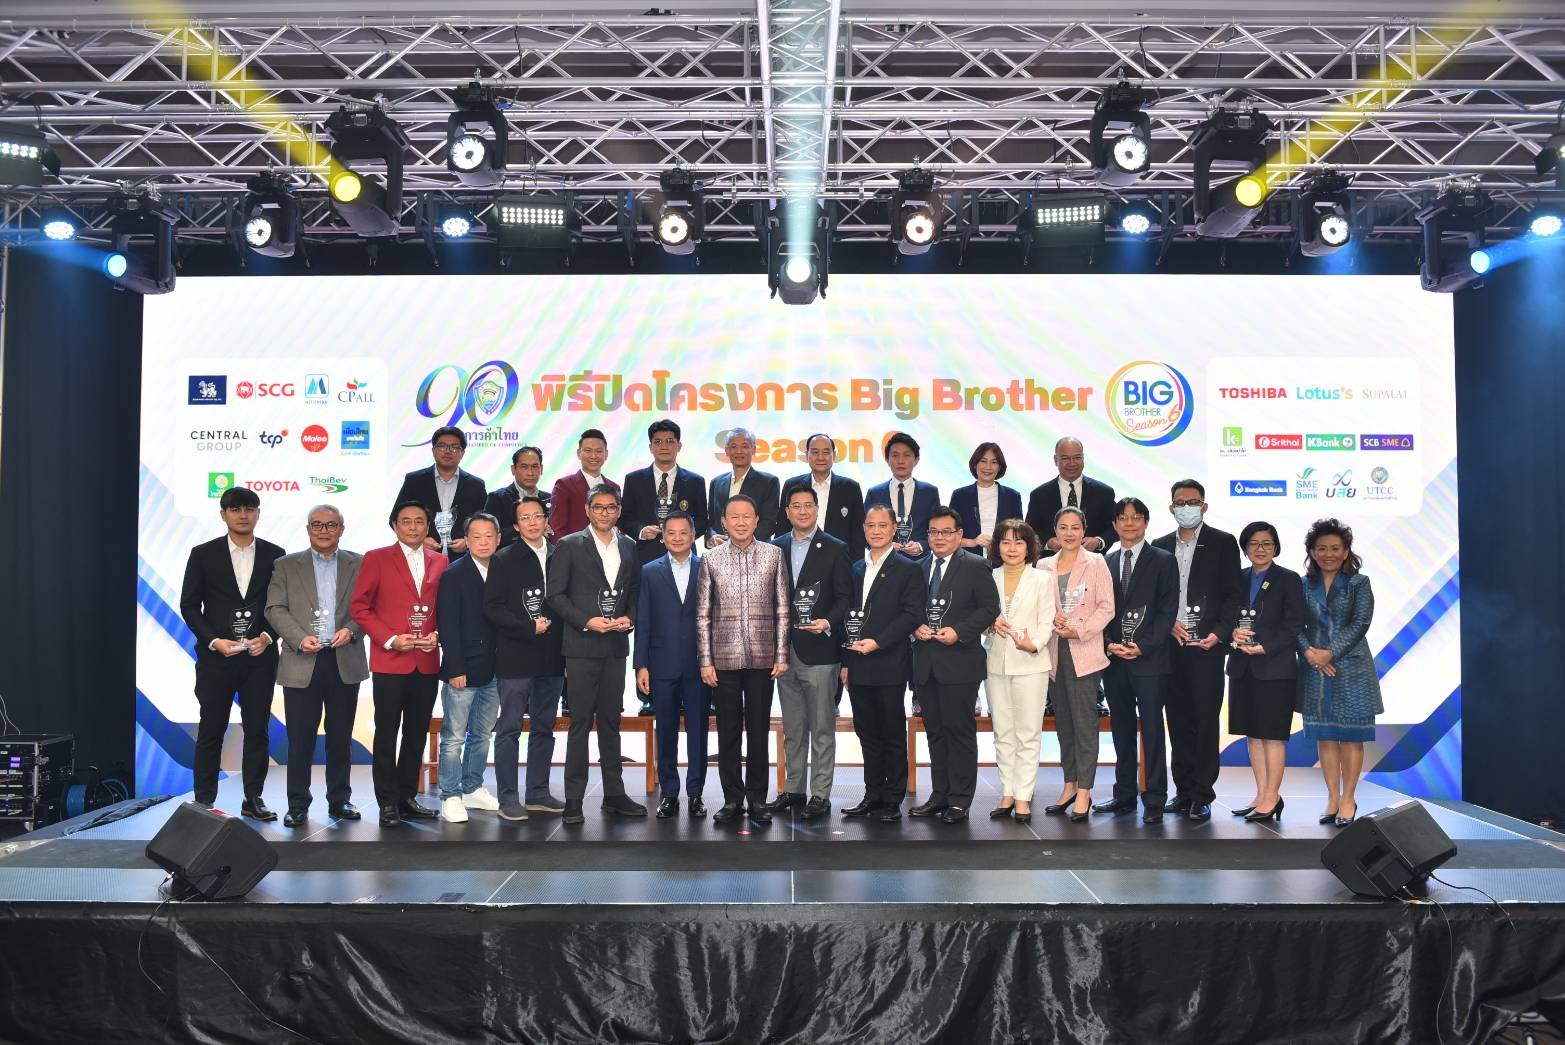 หอการค้าไทย เผยผลสำเร็จโครงการ Big Brother ปี 6 สร้างมูลค่าเพิ่มให้ SMEs มากกว่า 670 ล้านบาท